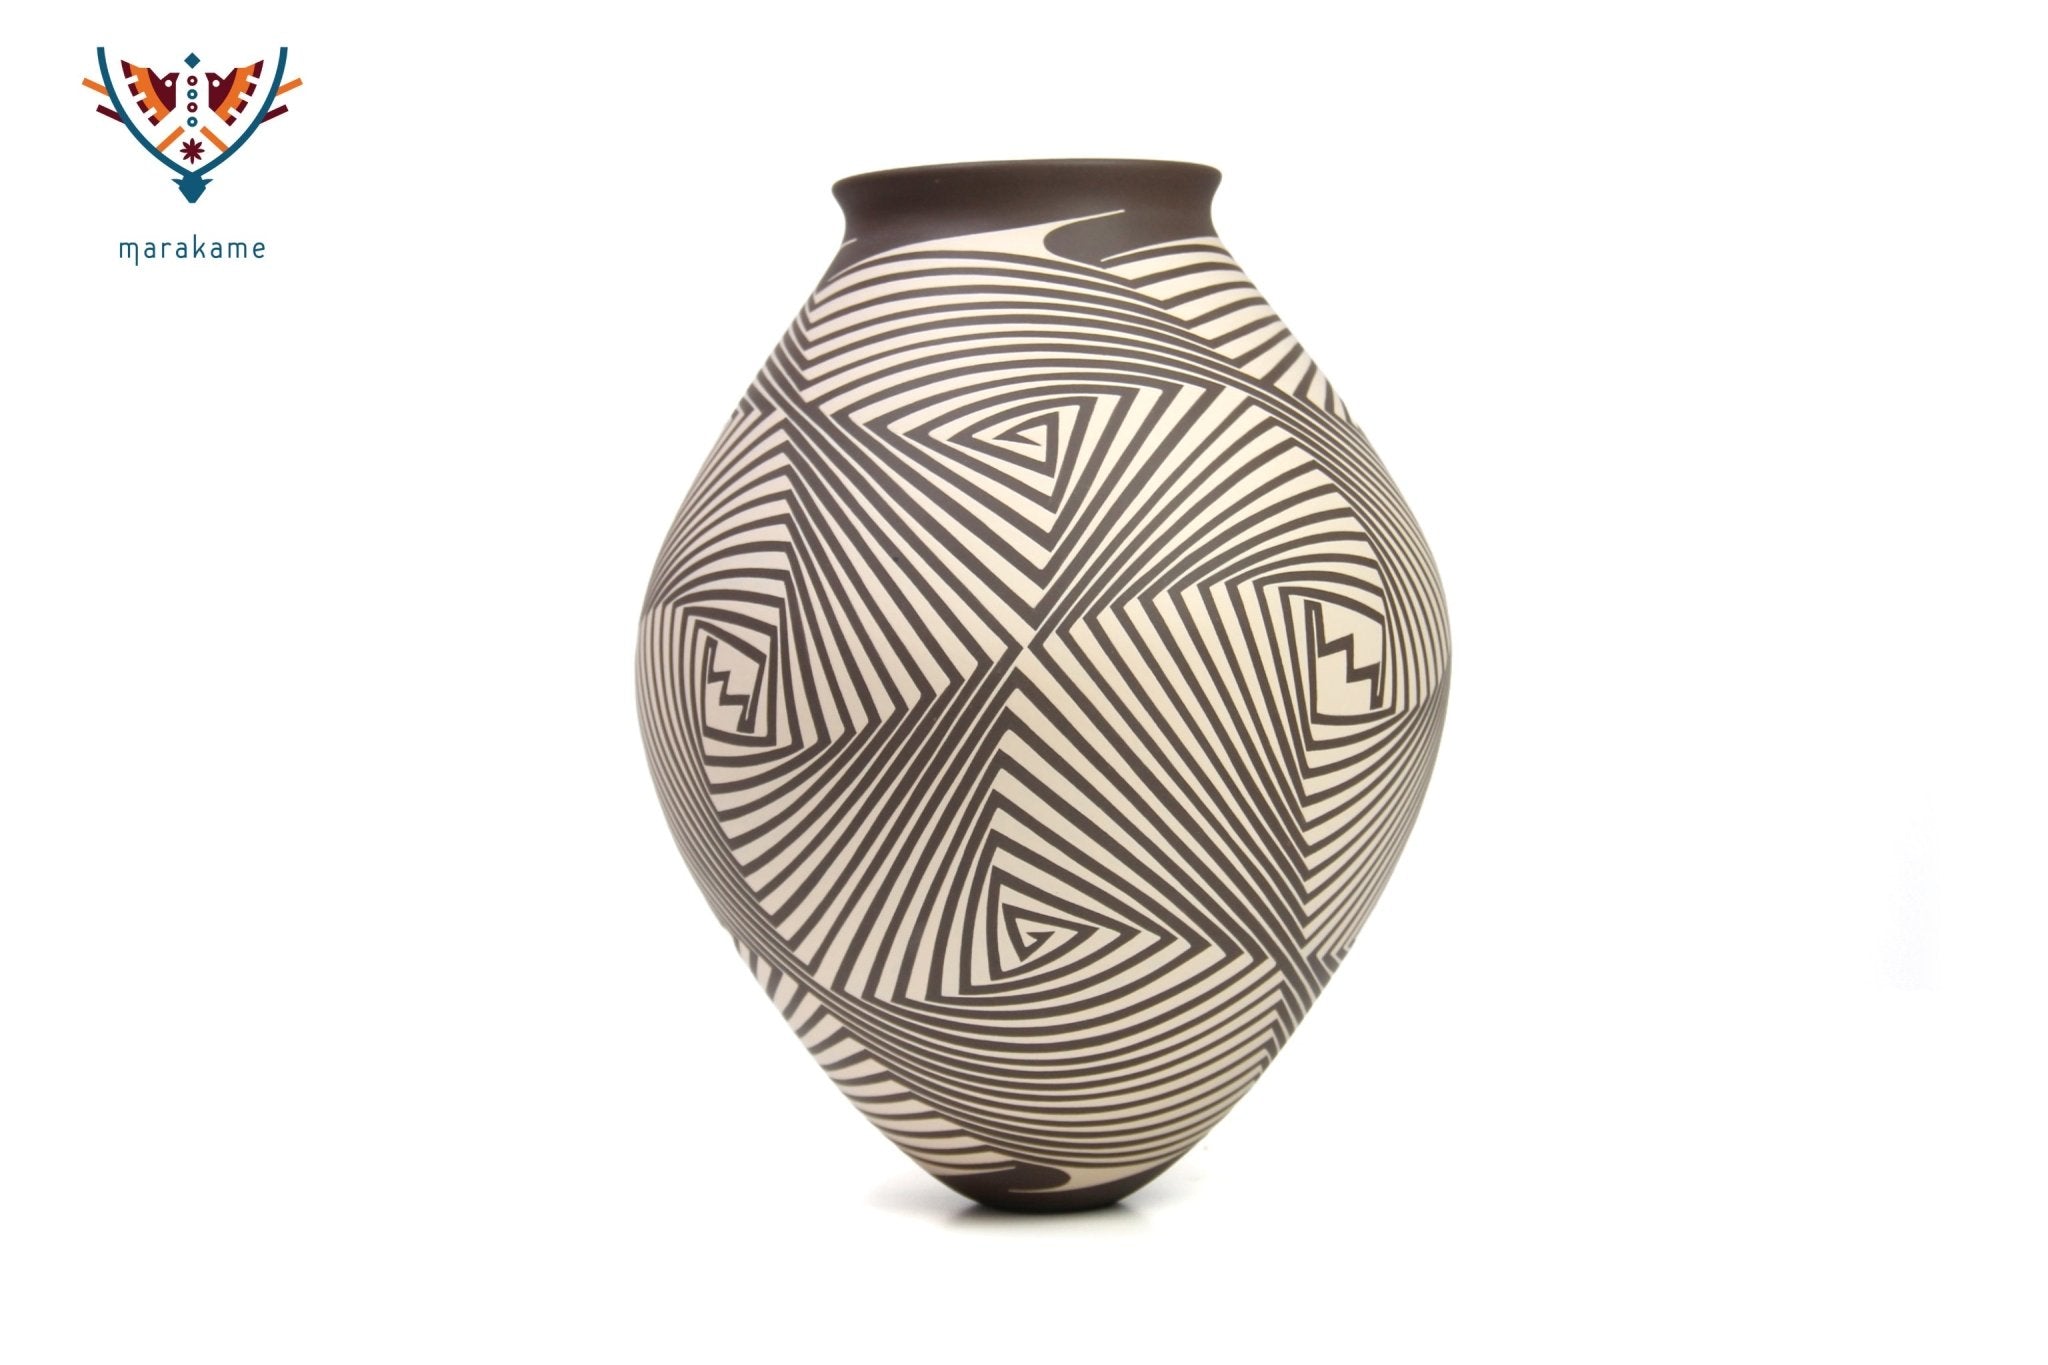 Mata Ortiz Keramik – Linien II – Huichol-Kunst – Marakame